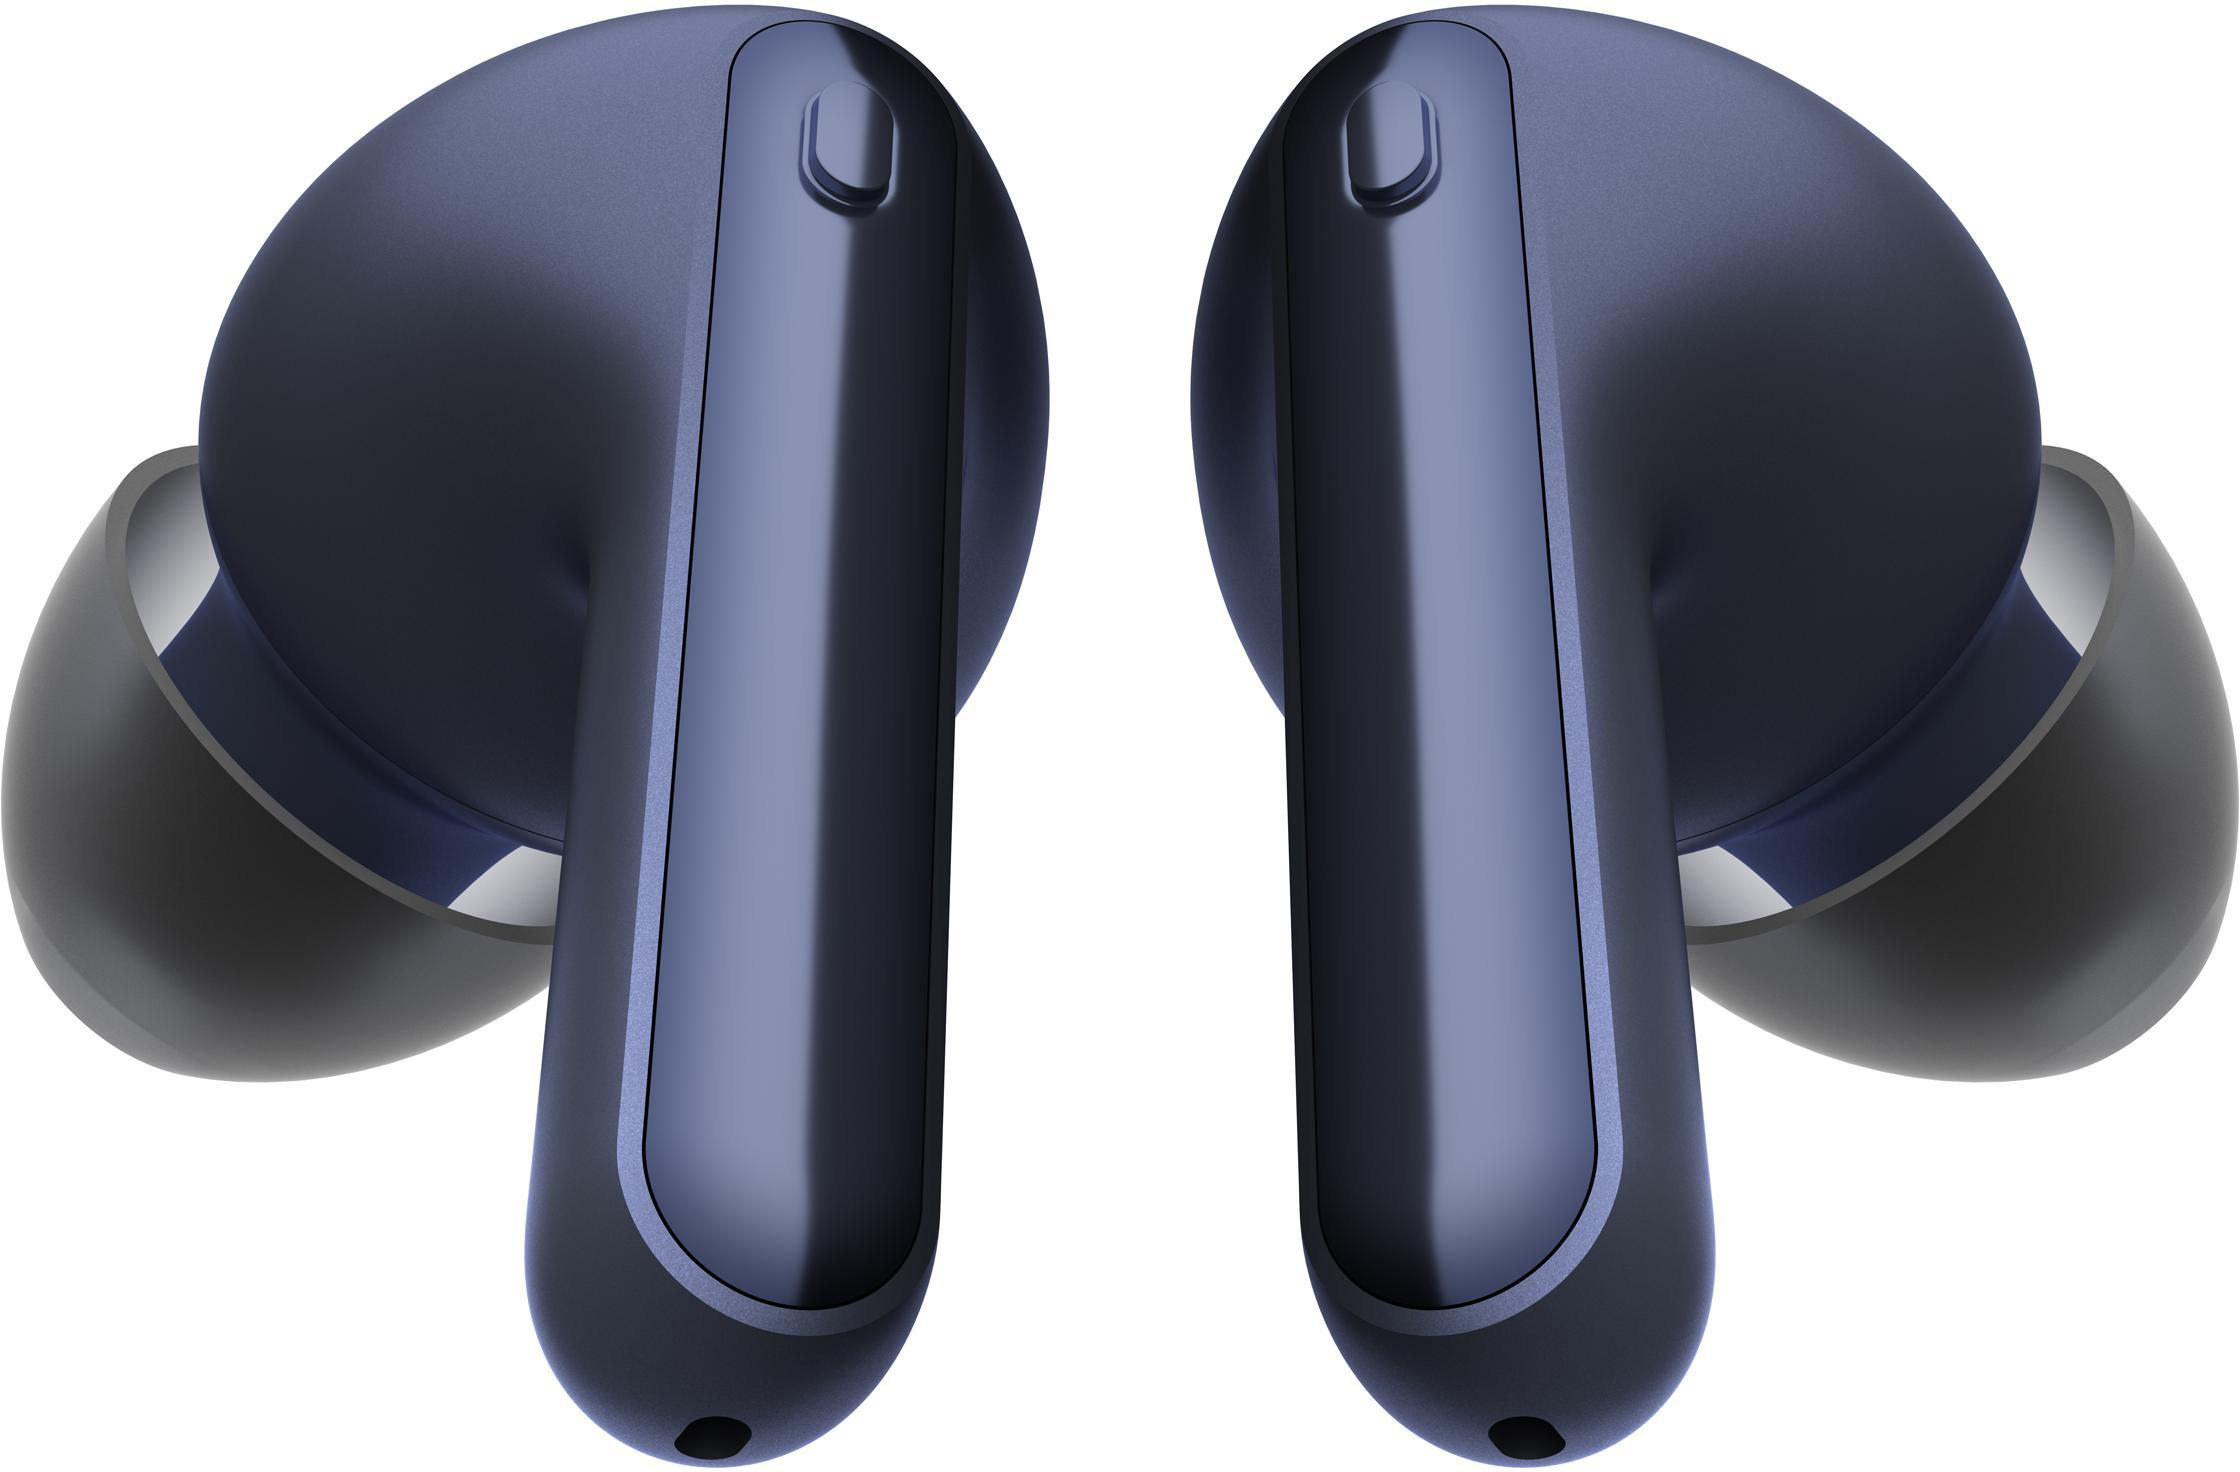 LG TONE Bluetooth In-ear Eclipse DFP3 Free True Blue Kopfhörer Wireless